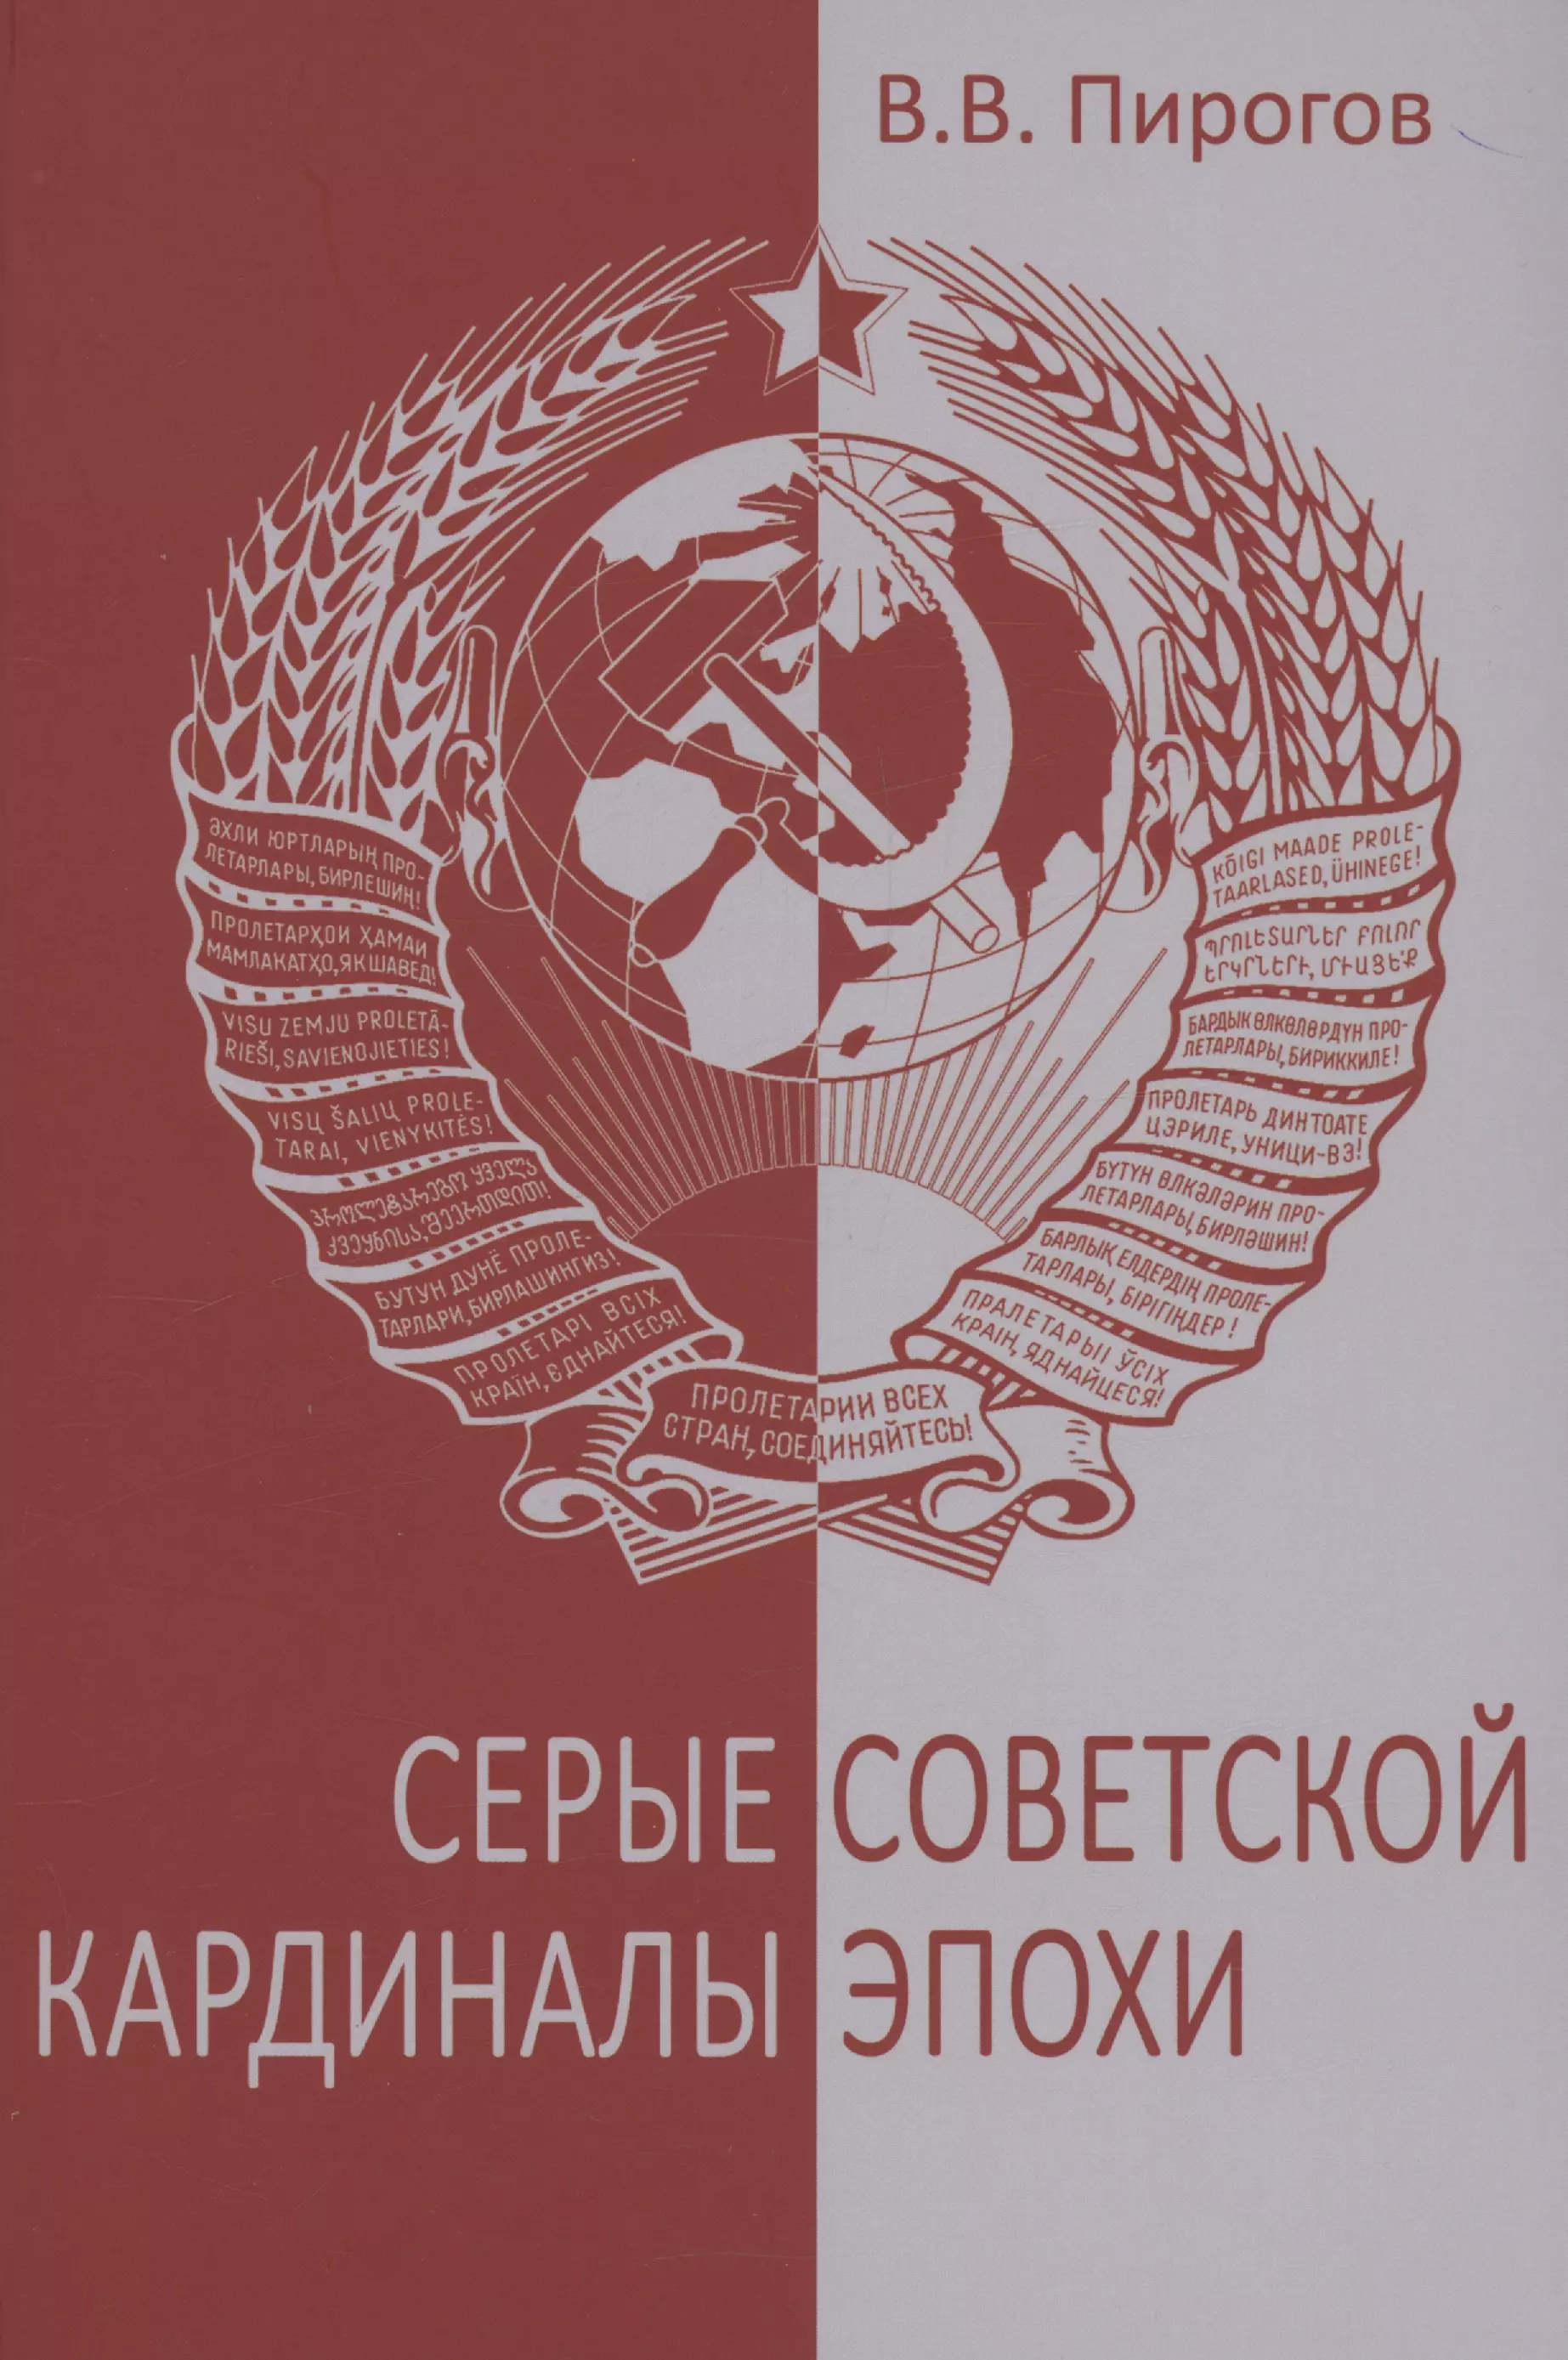 Серые кардиналы советской эпохи знаменитые символы советской эпохи